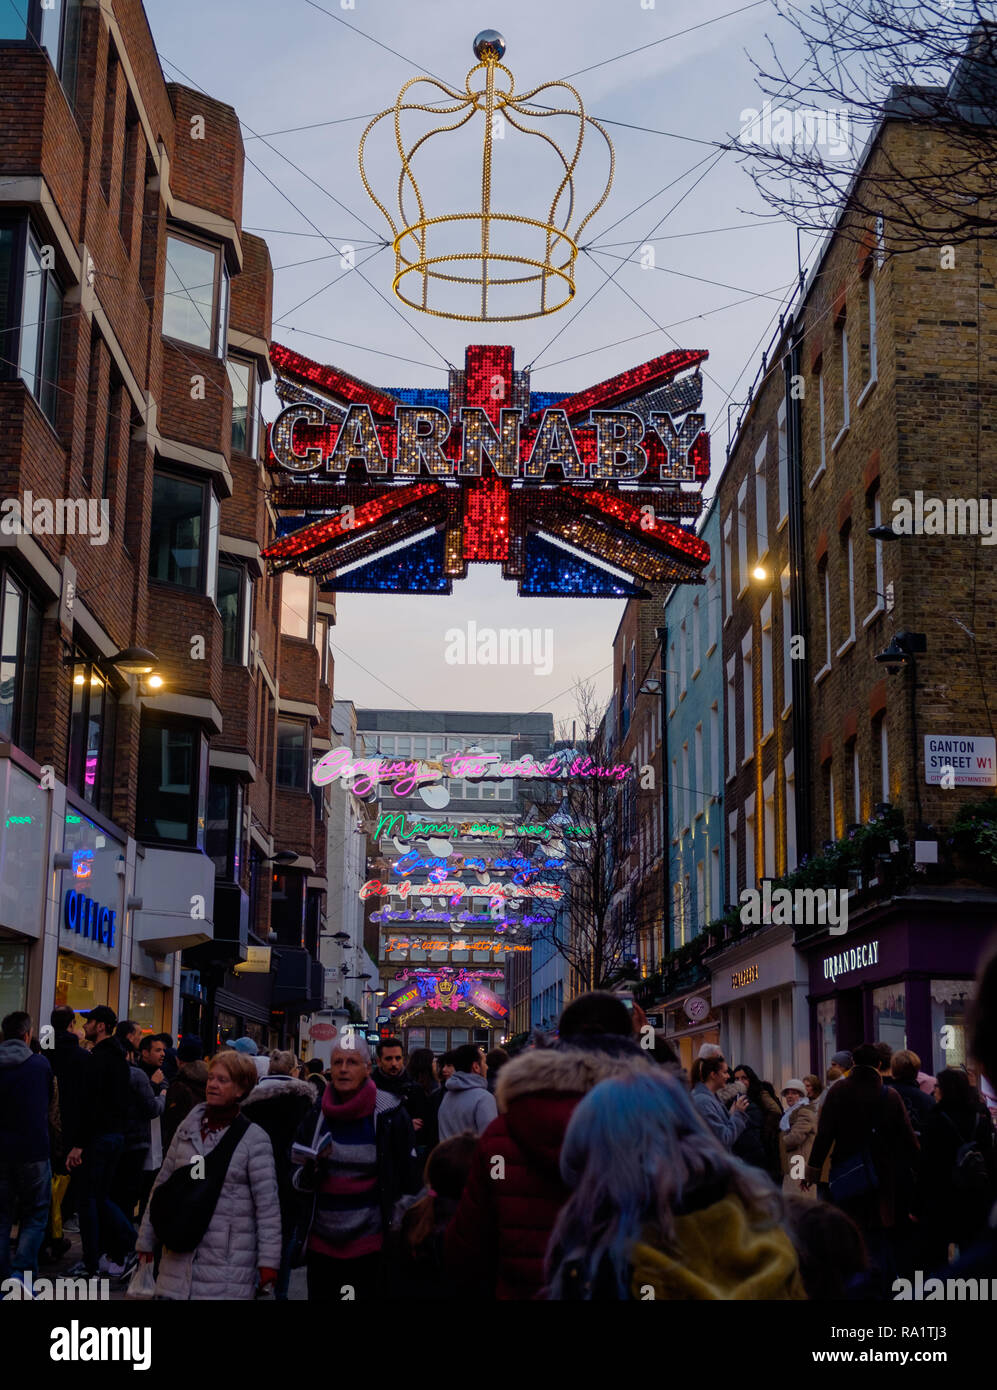 Shoppers sur Carnaby Street, Soho, Londres sous la lumière néon Noël l'installation. Décembre 2018 Banque D'Images